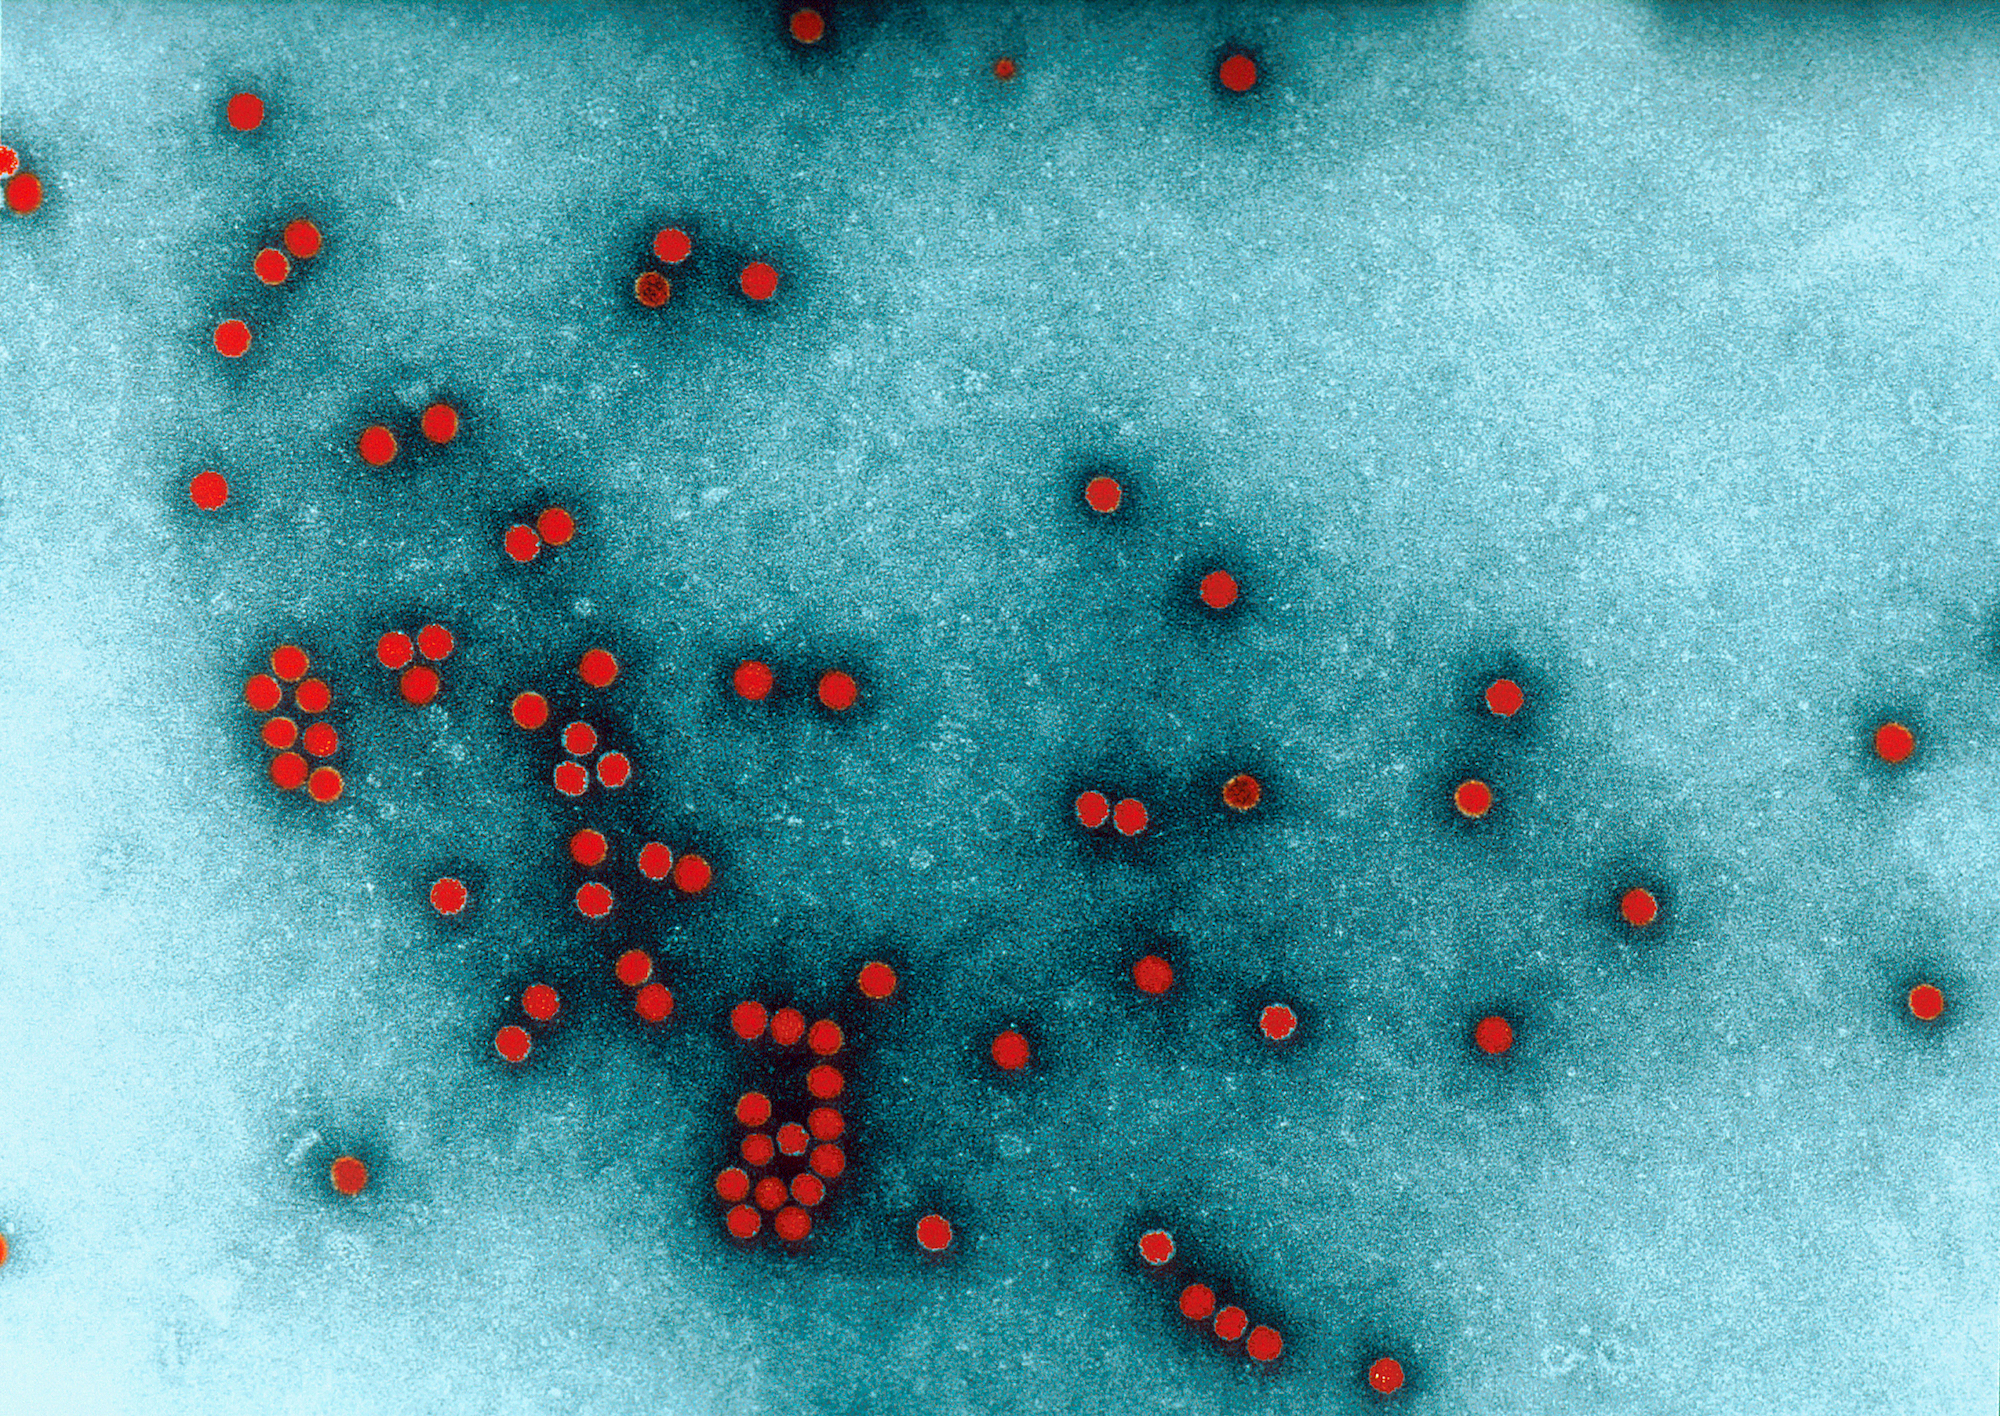 Image du virus de la poliomyélite au microscope électronique. © Charles Dauguet, Institut Pasteur